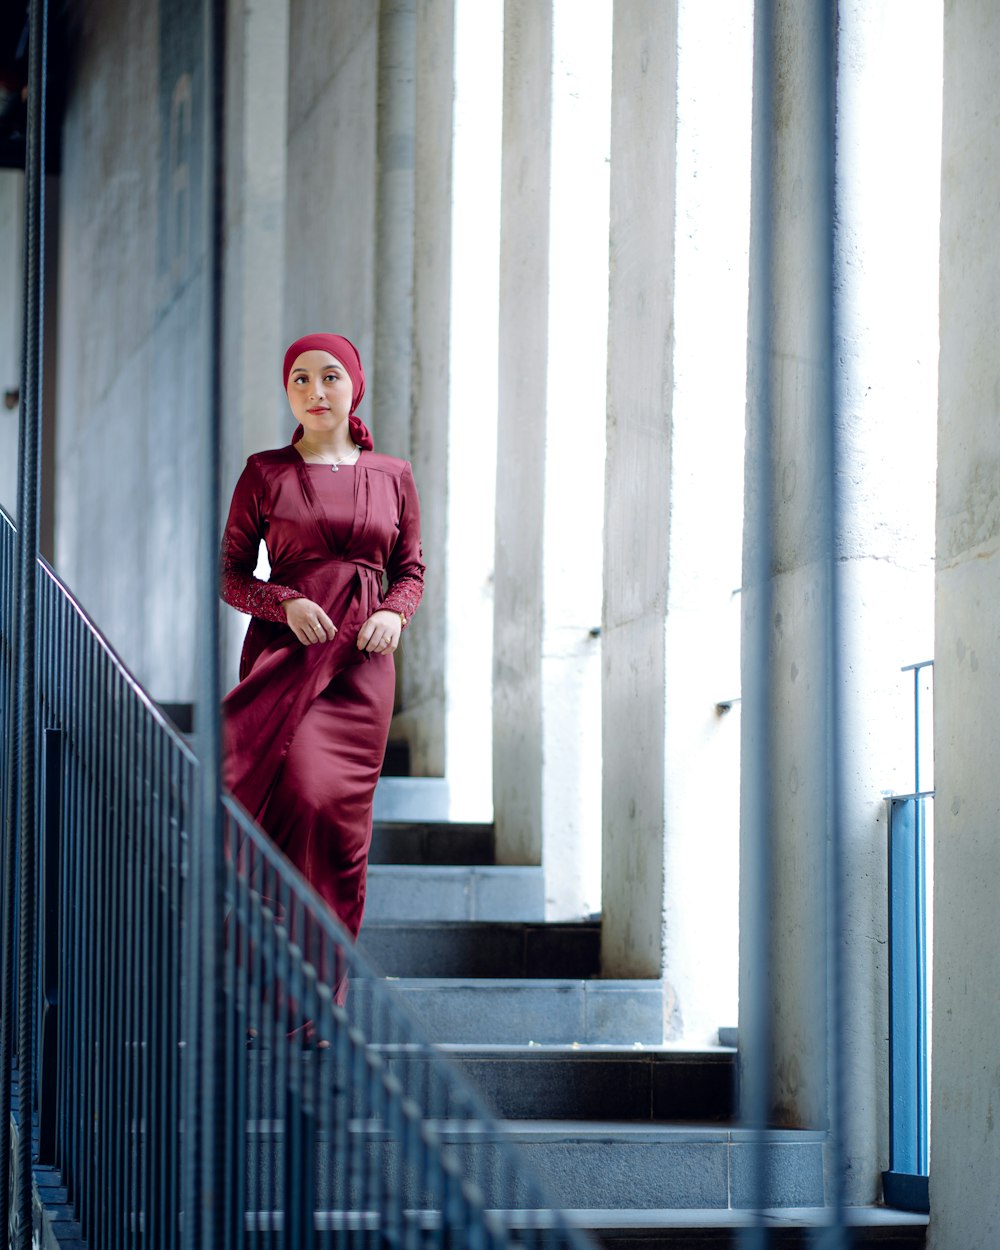 Une femme en robe rouge se tient debout sur un escalier